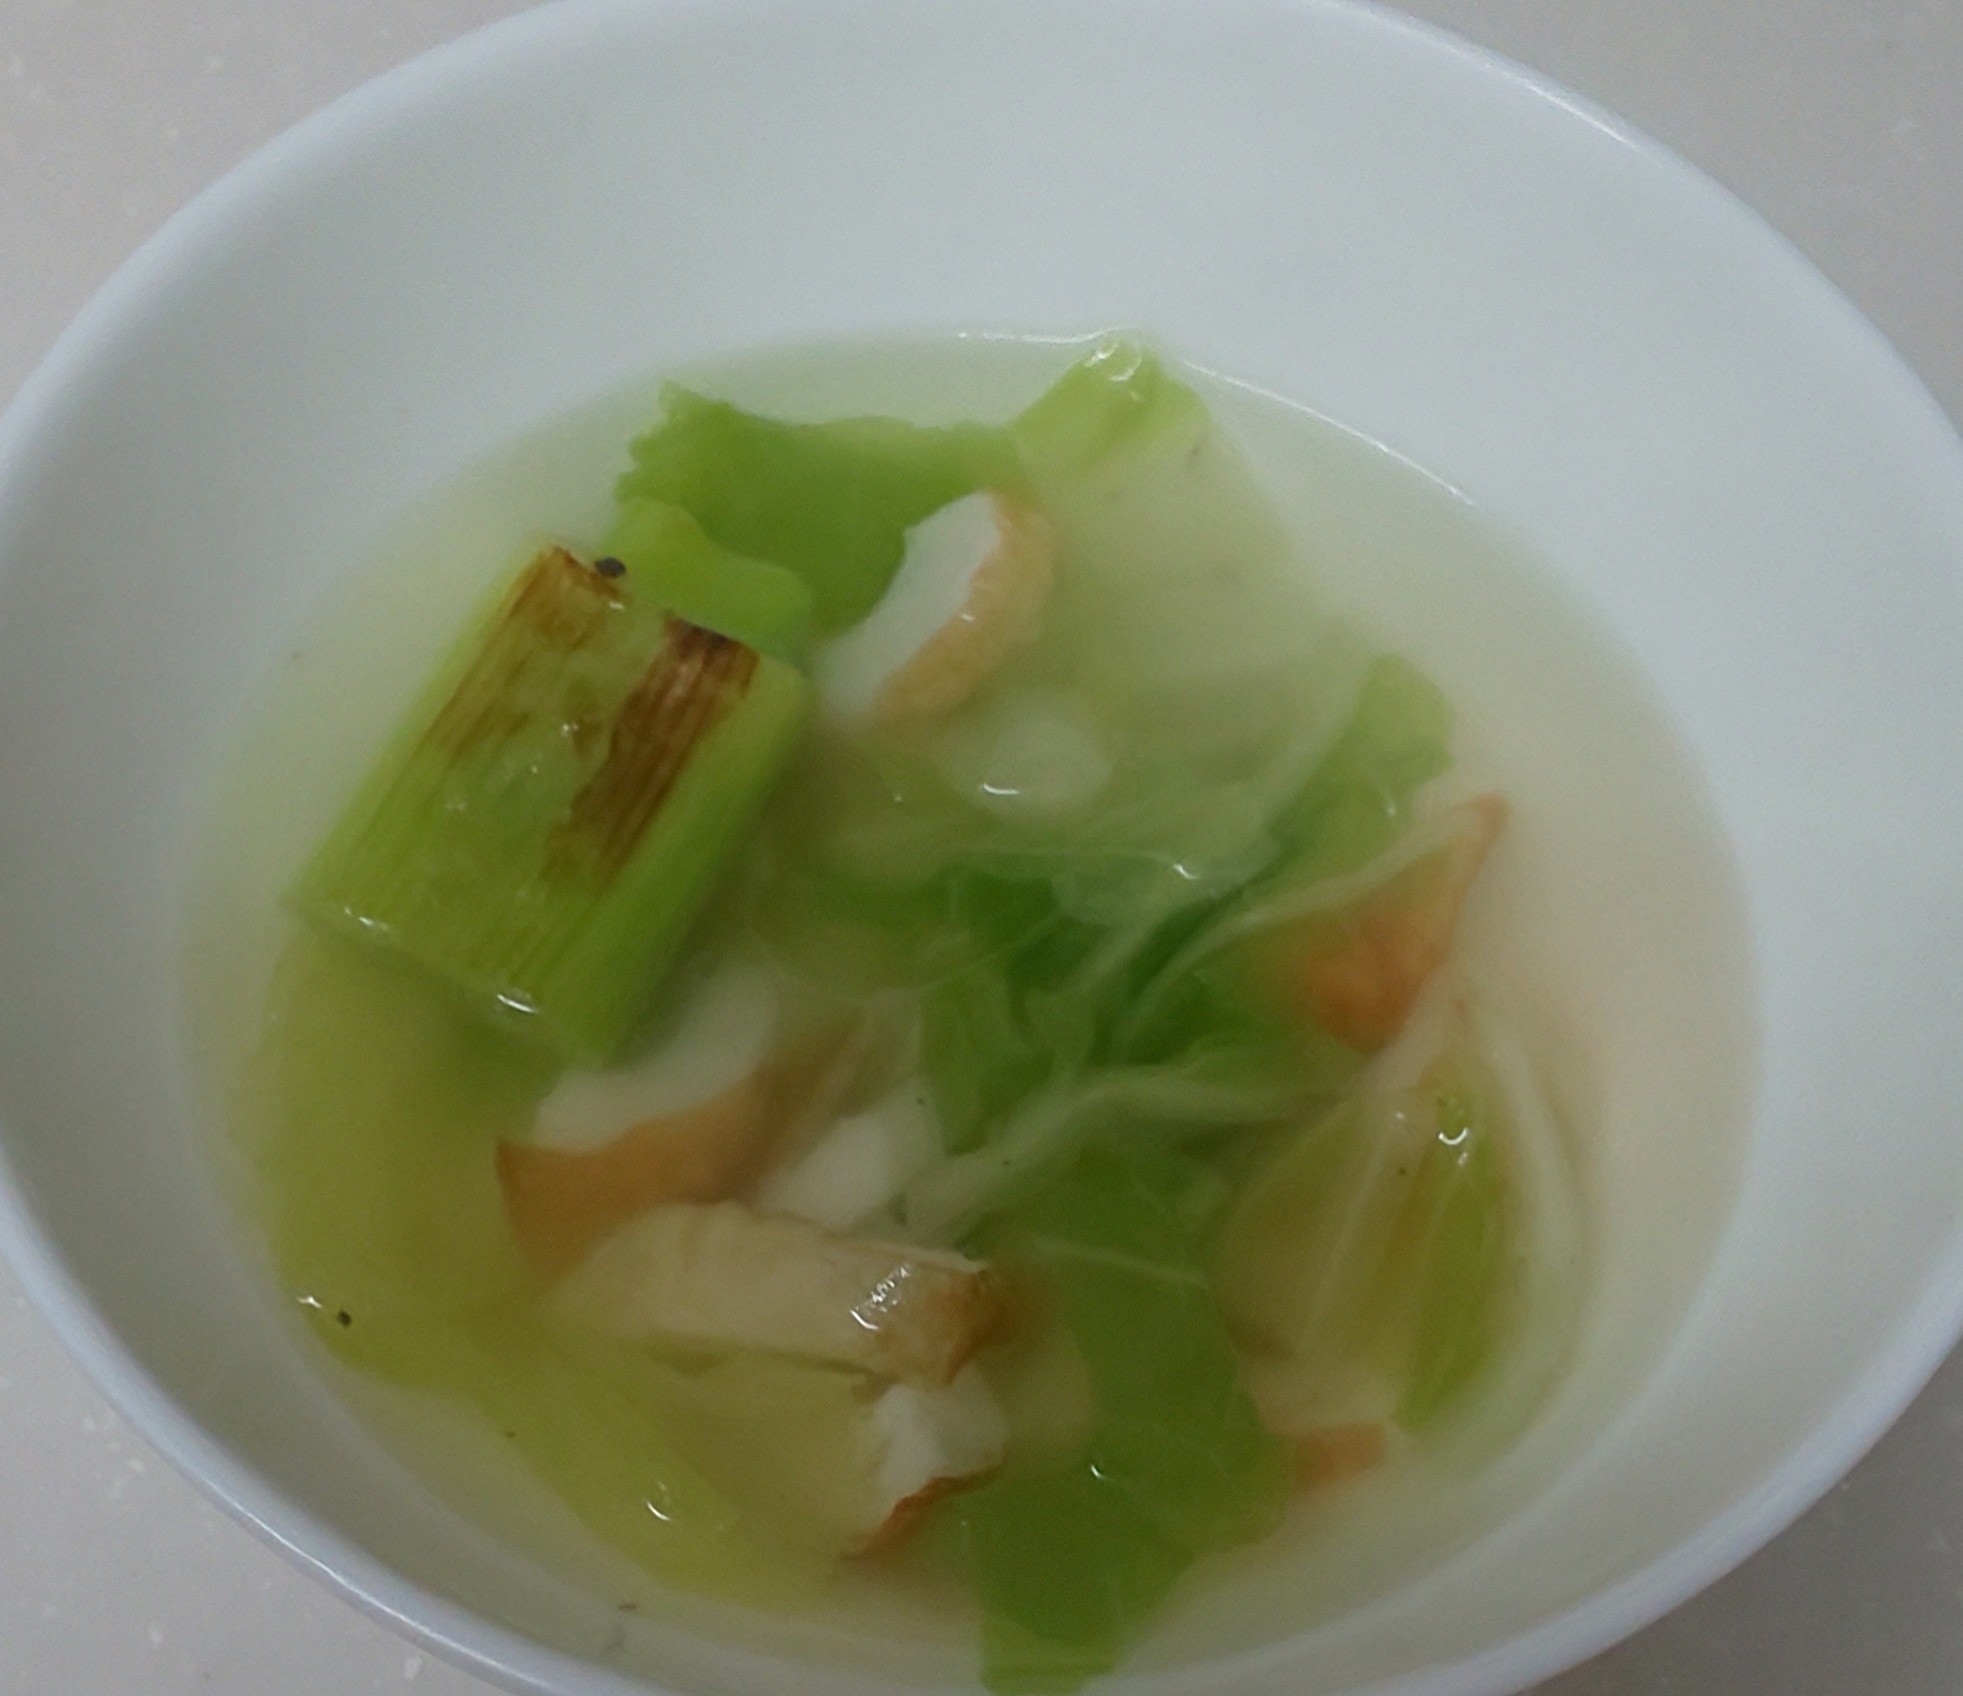 白菜☆ちくわ☆焼きねぎの中華スープ(*^-^*)